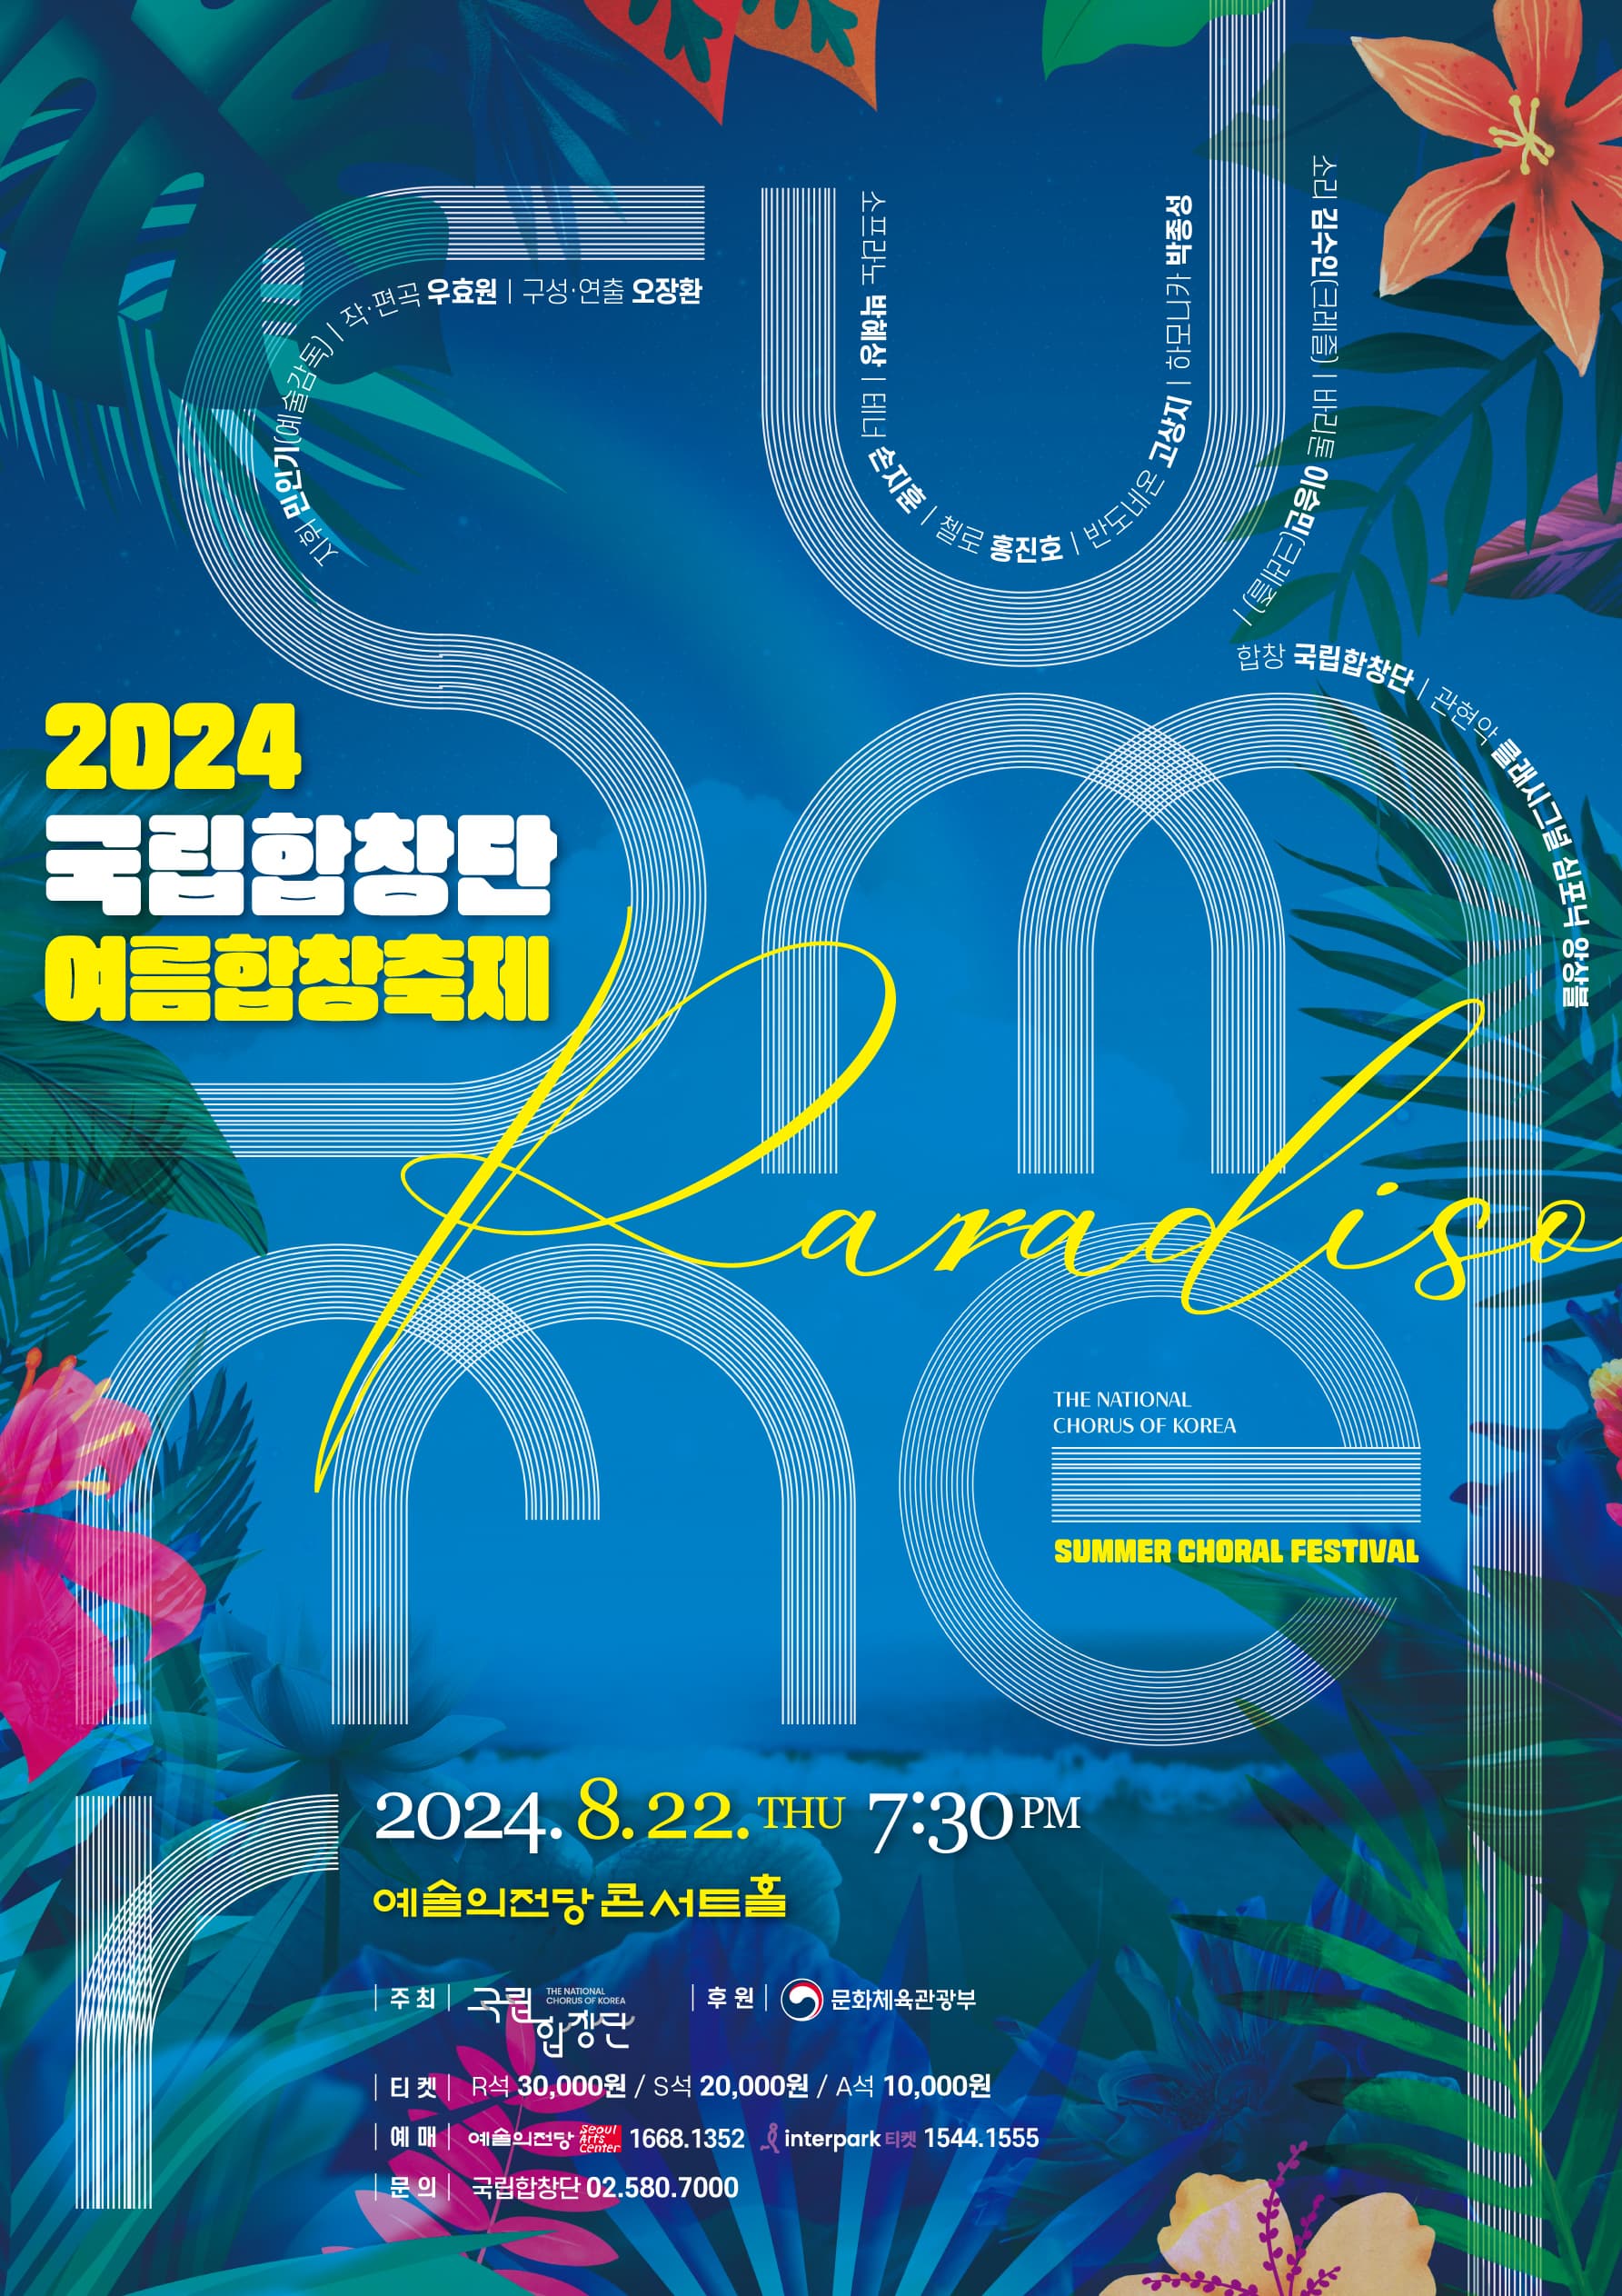 2024 국립합창단 여름합창축제 | Summer Paradiso | 2024.08.22. 목요일 오후 7시 30분 | 예술의전당 콘서트홀